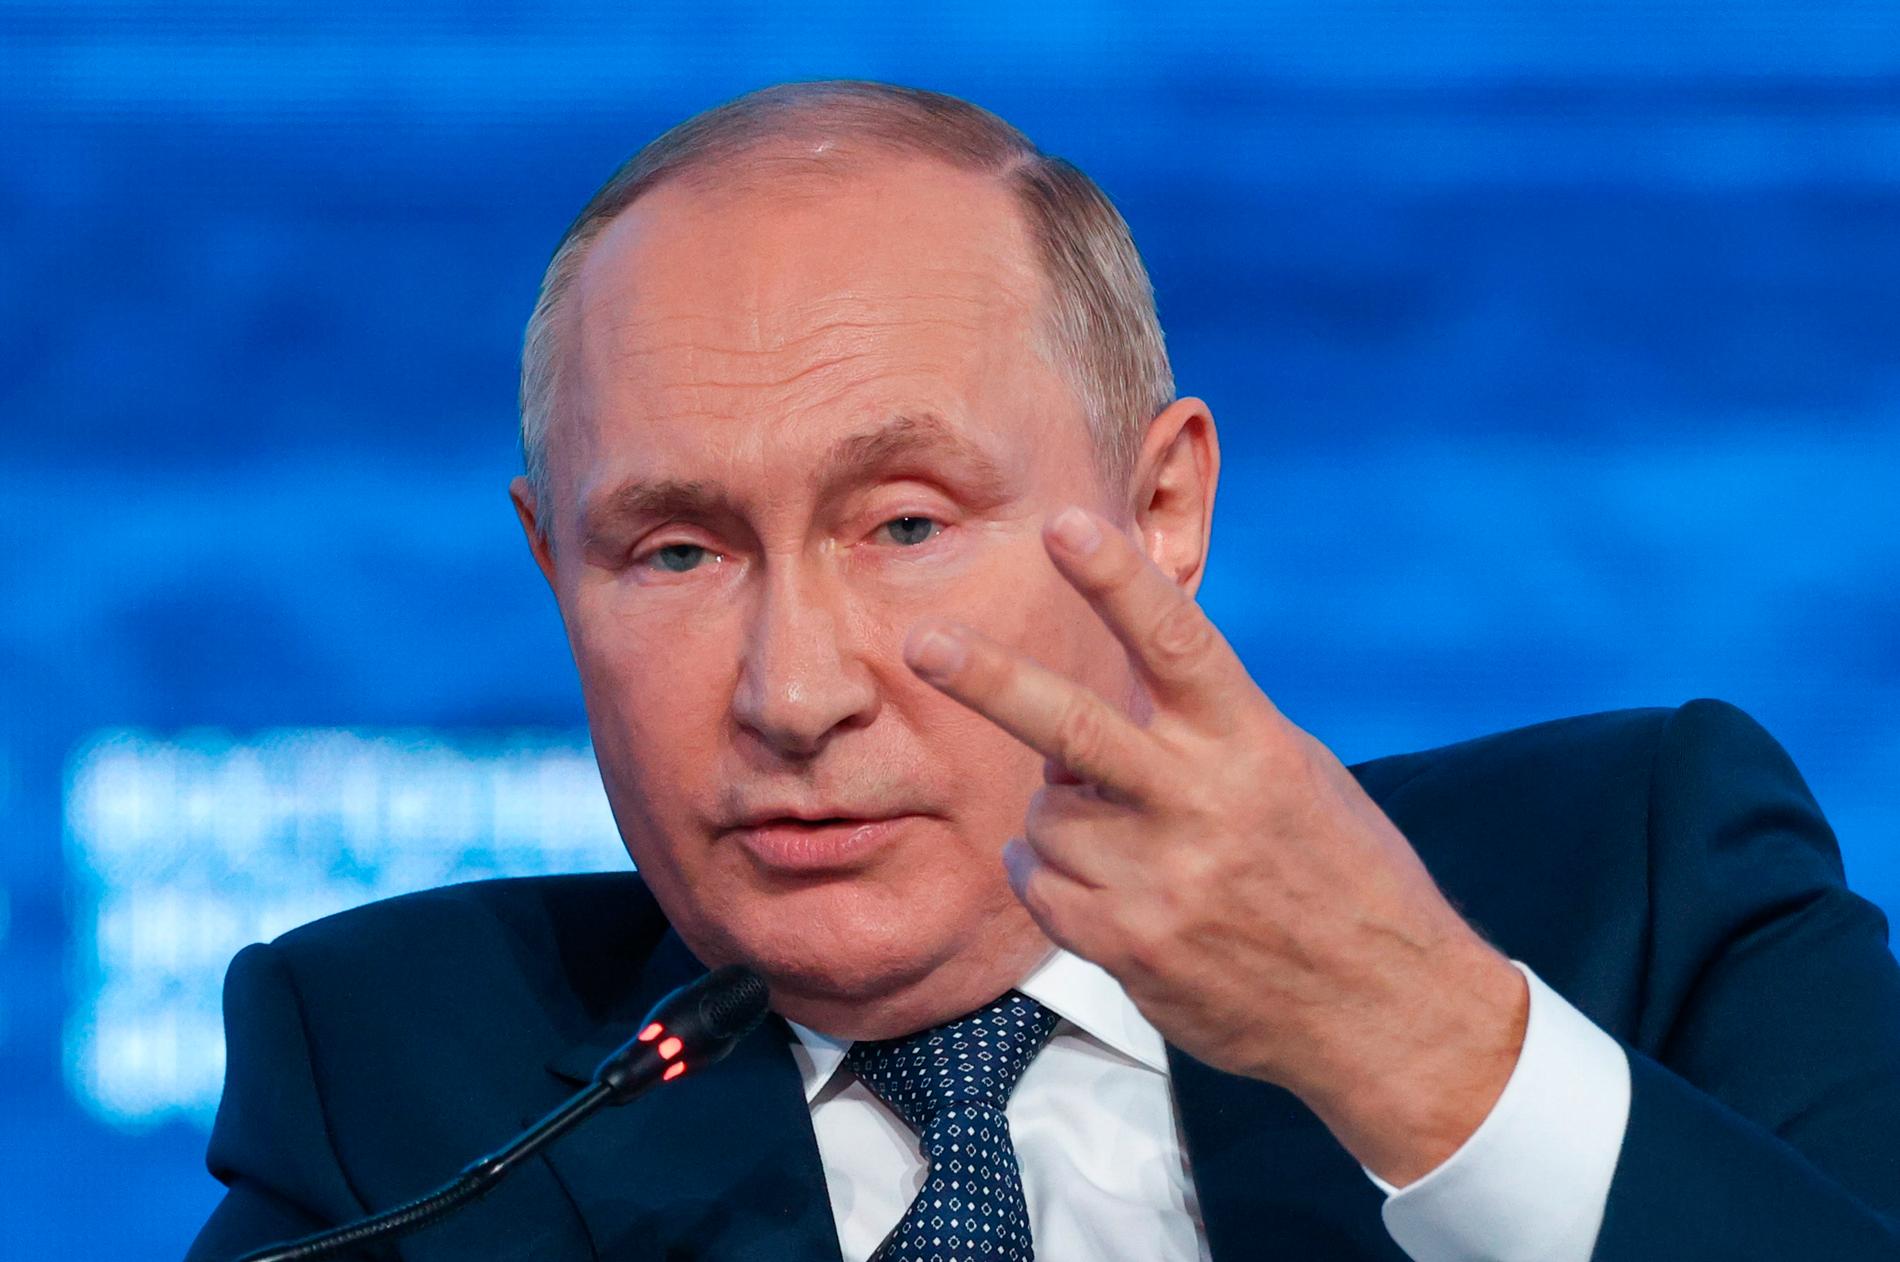 ”Om inte Putin snart lyckas påvisa framgångar i kriget riskerar det att påverka hans maktställning negativt.”